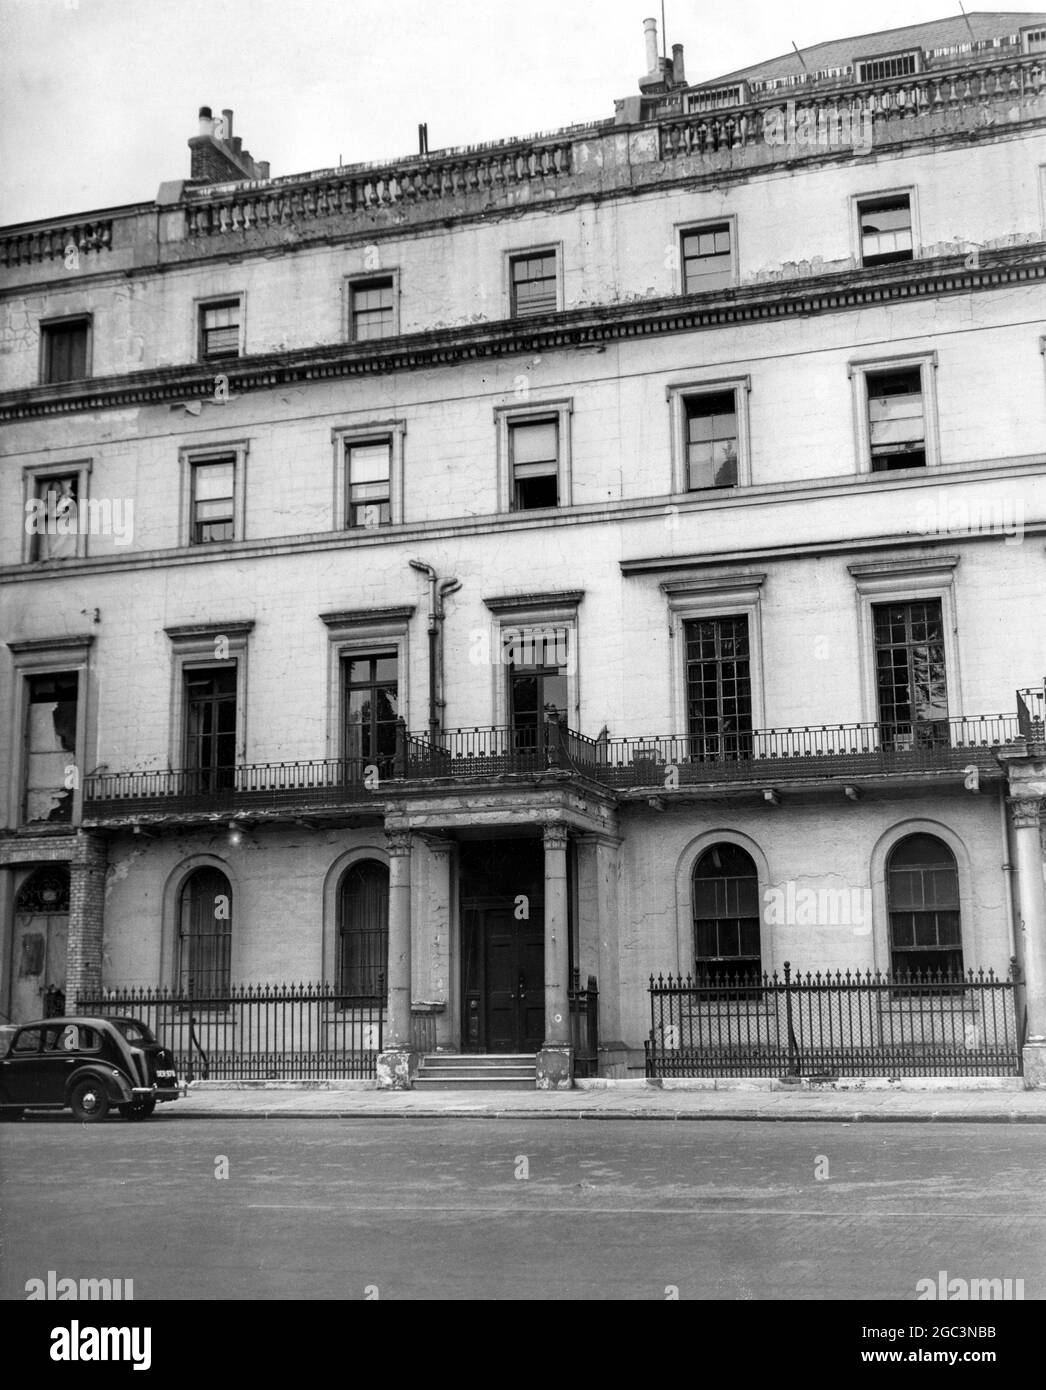 14 juillet 1947 Numéro 3 Belgrave Square, l'ancienne maison de la duchesse de Kent qui peut être choisie comme la maison de Londres de la princesse Elizabeth et le lieutenant Philip Mountbatten Belgravia, Londres, Angleterre Banque D'Images